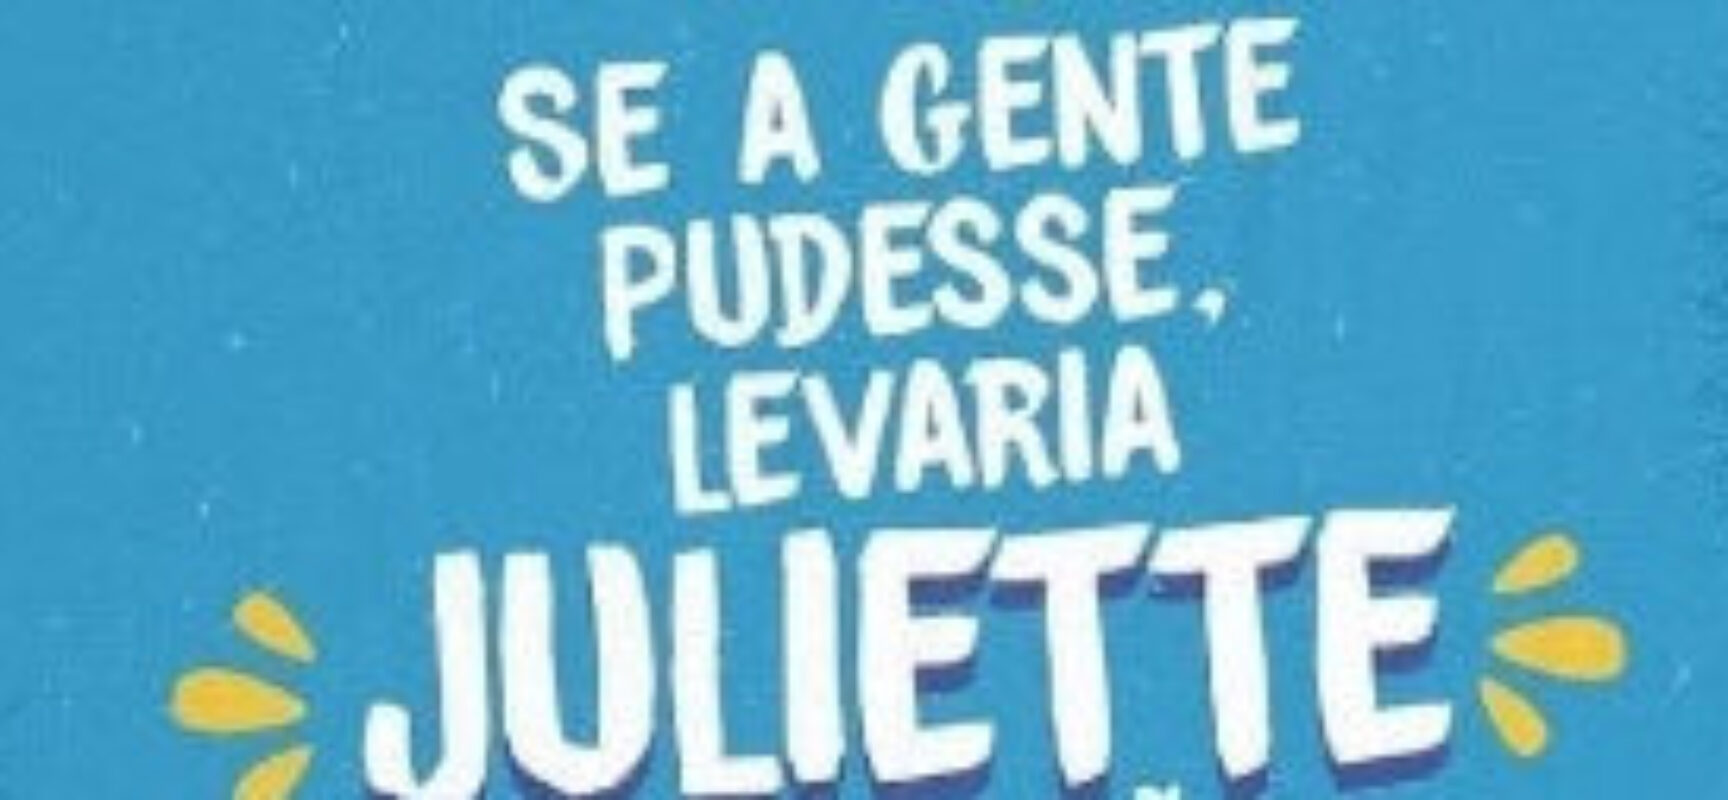 Sindicato das empresas de ônibus de João Pessoa faz homenagem à Juliette no transporte coletivo